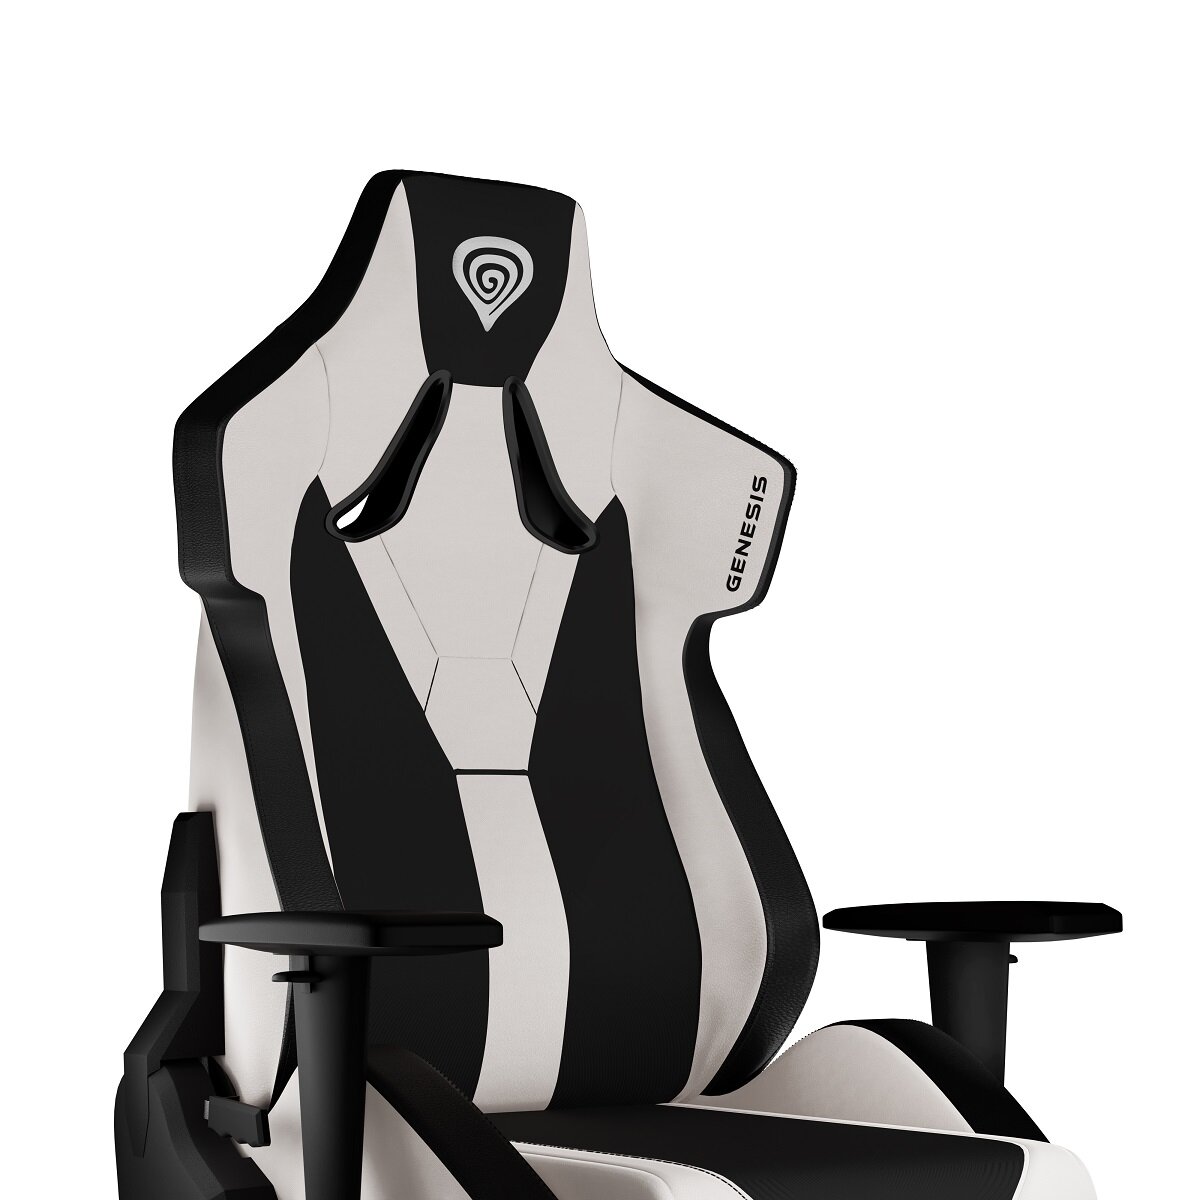 Krzesło gamingowe Genesis Nitro 650 białe widok oparcia krzesła